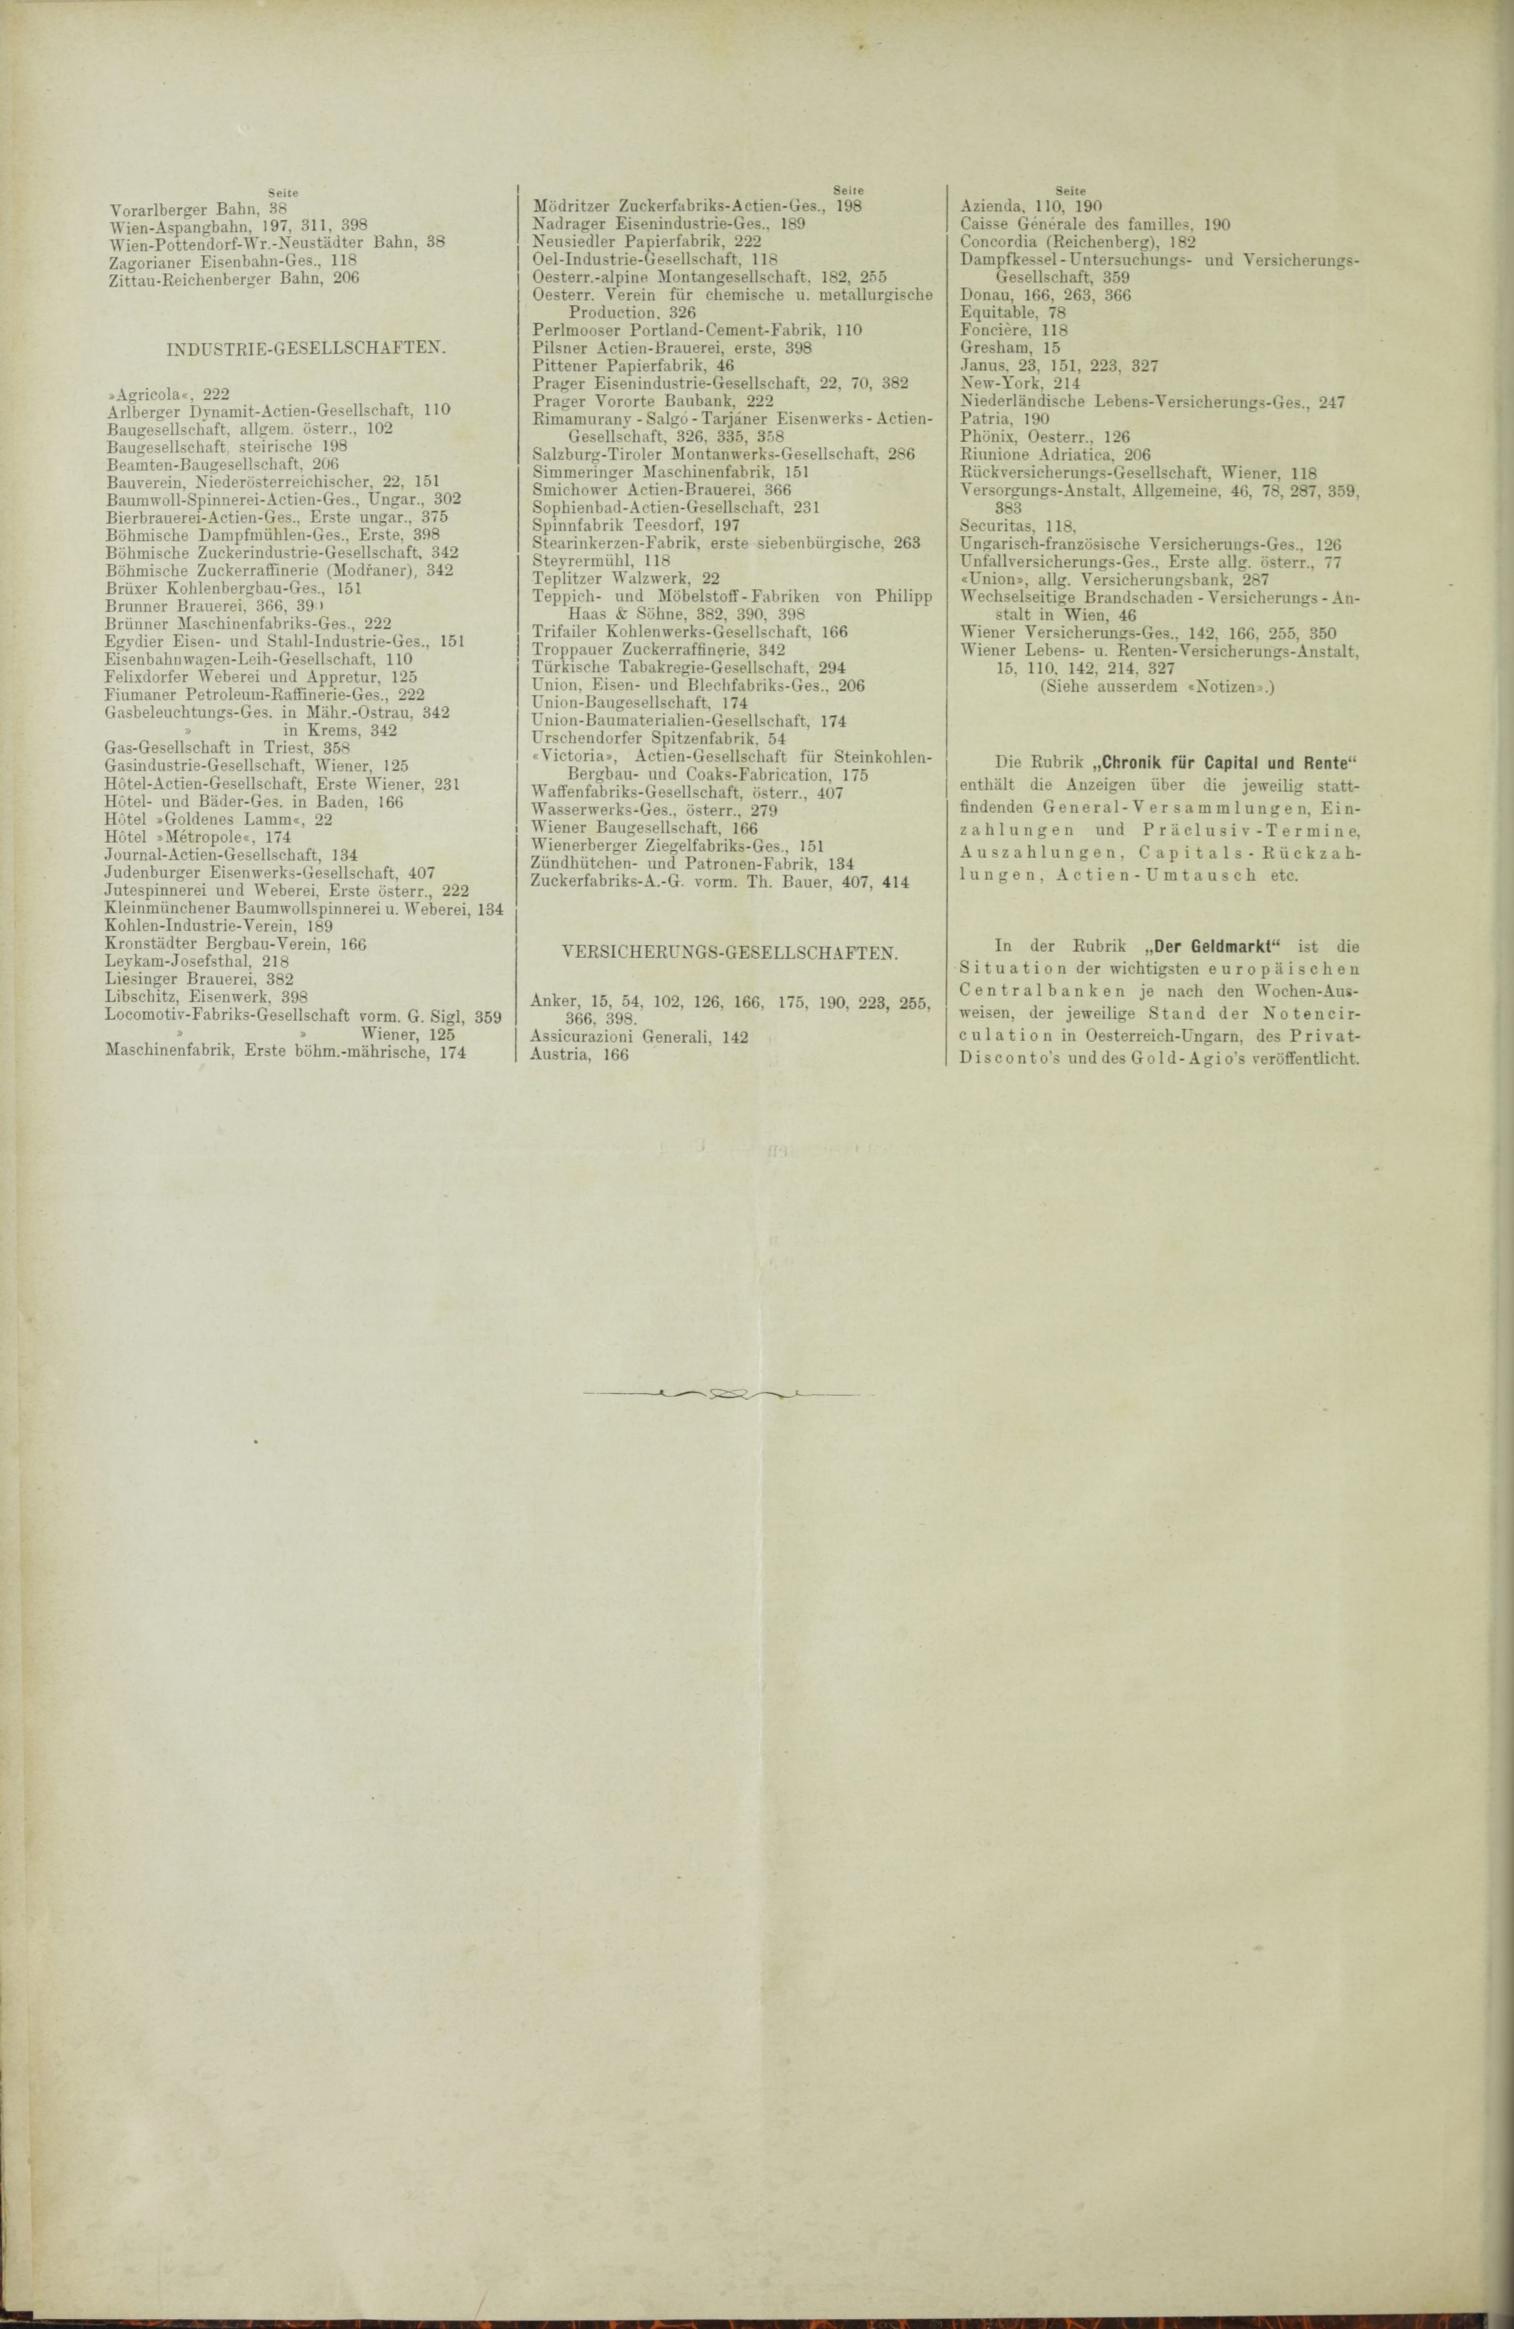 Der Tresor 09.09.1886 - Seite 12